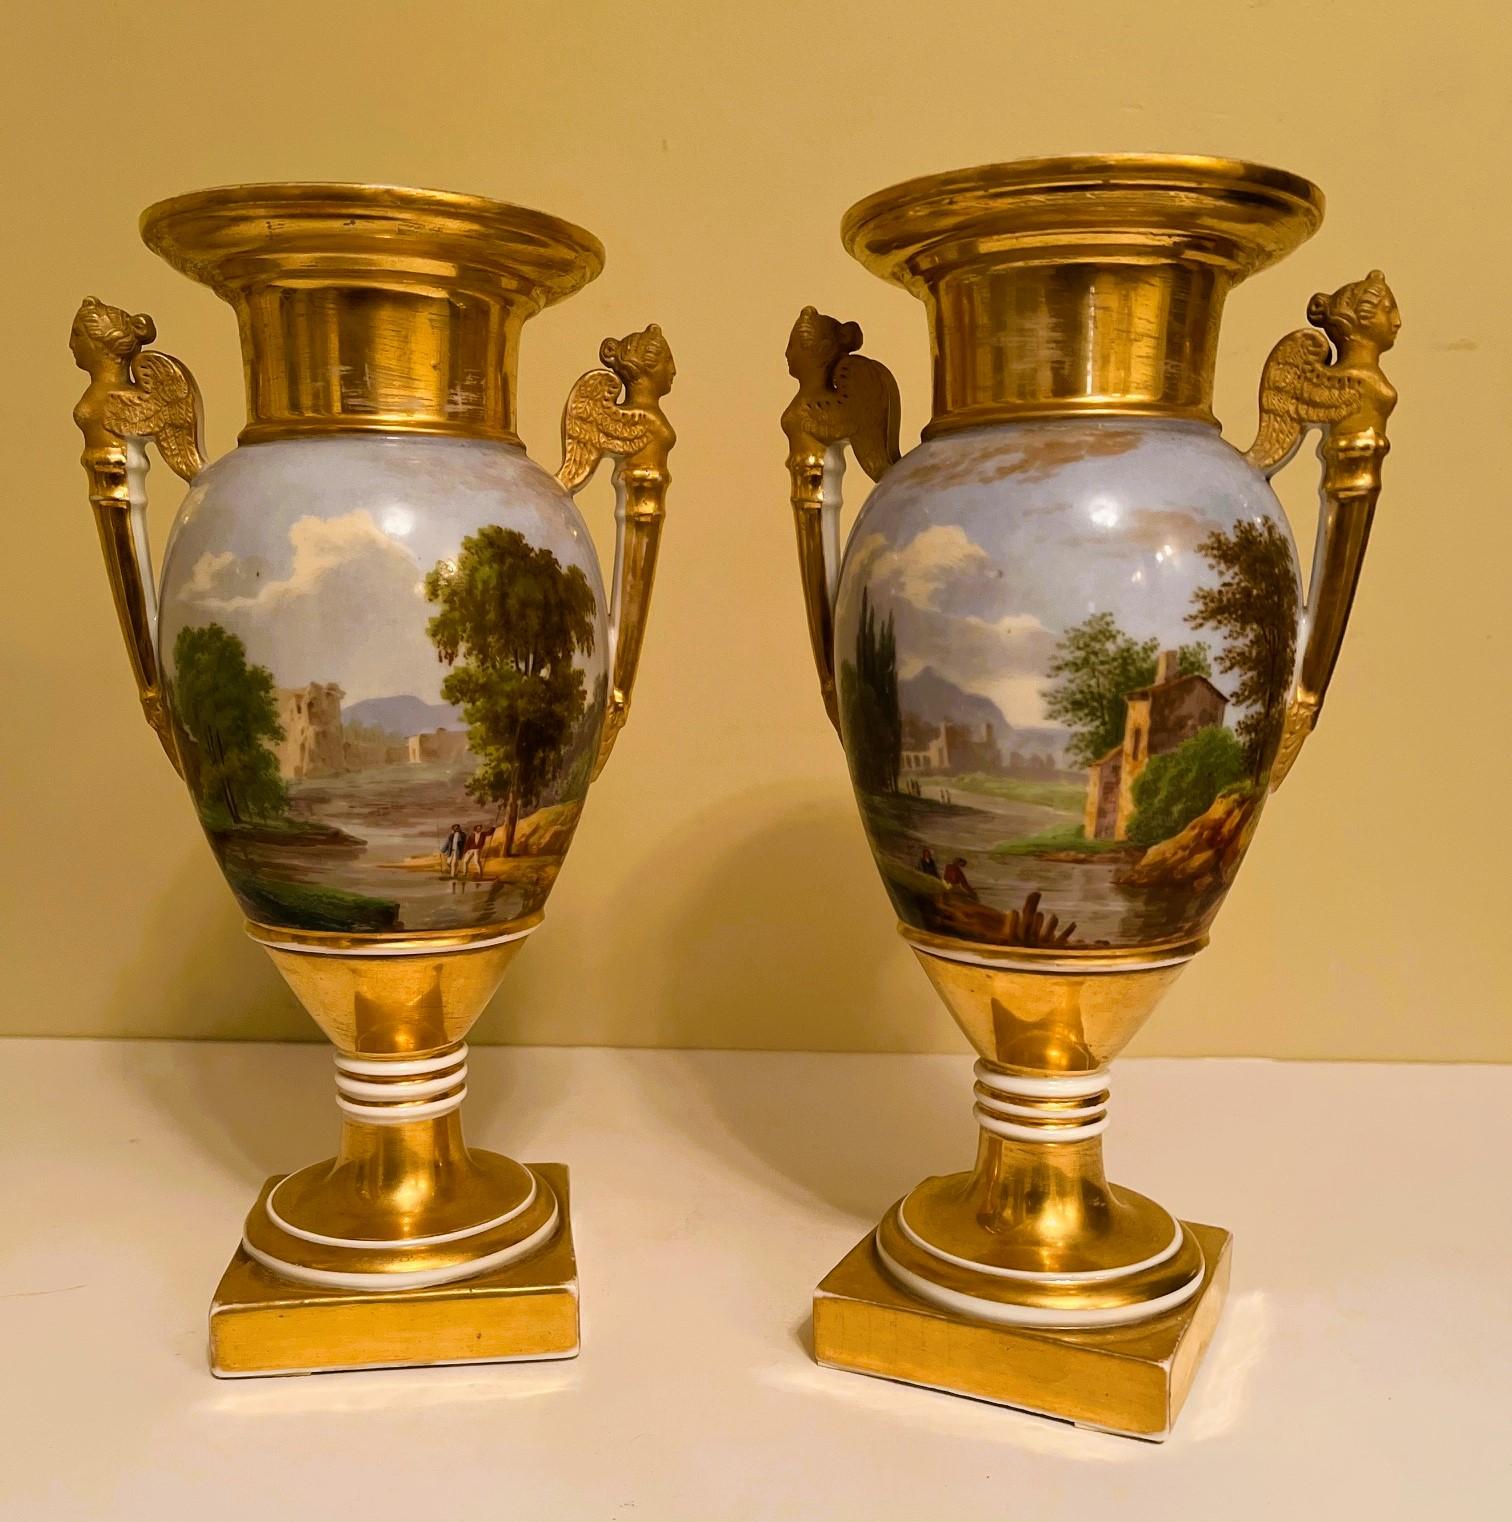 Dies ist ein außergewöhnliches Paar Alt-Paris-Vasen mit schönen handgemalten Panoramaszenen. Die bukolischen Szenen zeigen modisch gekleidete Menschen, die sich mit Kühen an einem sich schlängelnden Bach aufhalten, mit mittelalterlichen Ruinen im